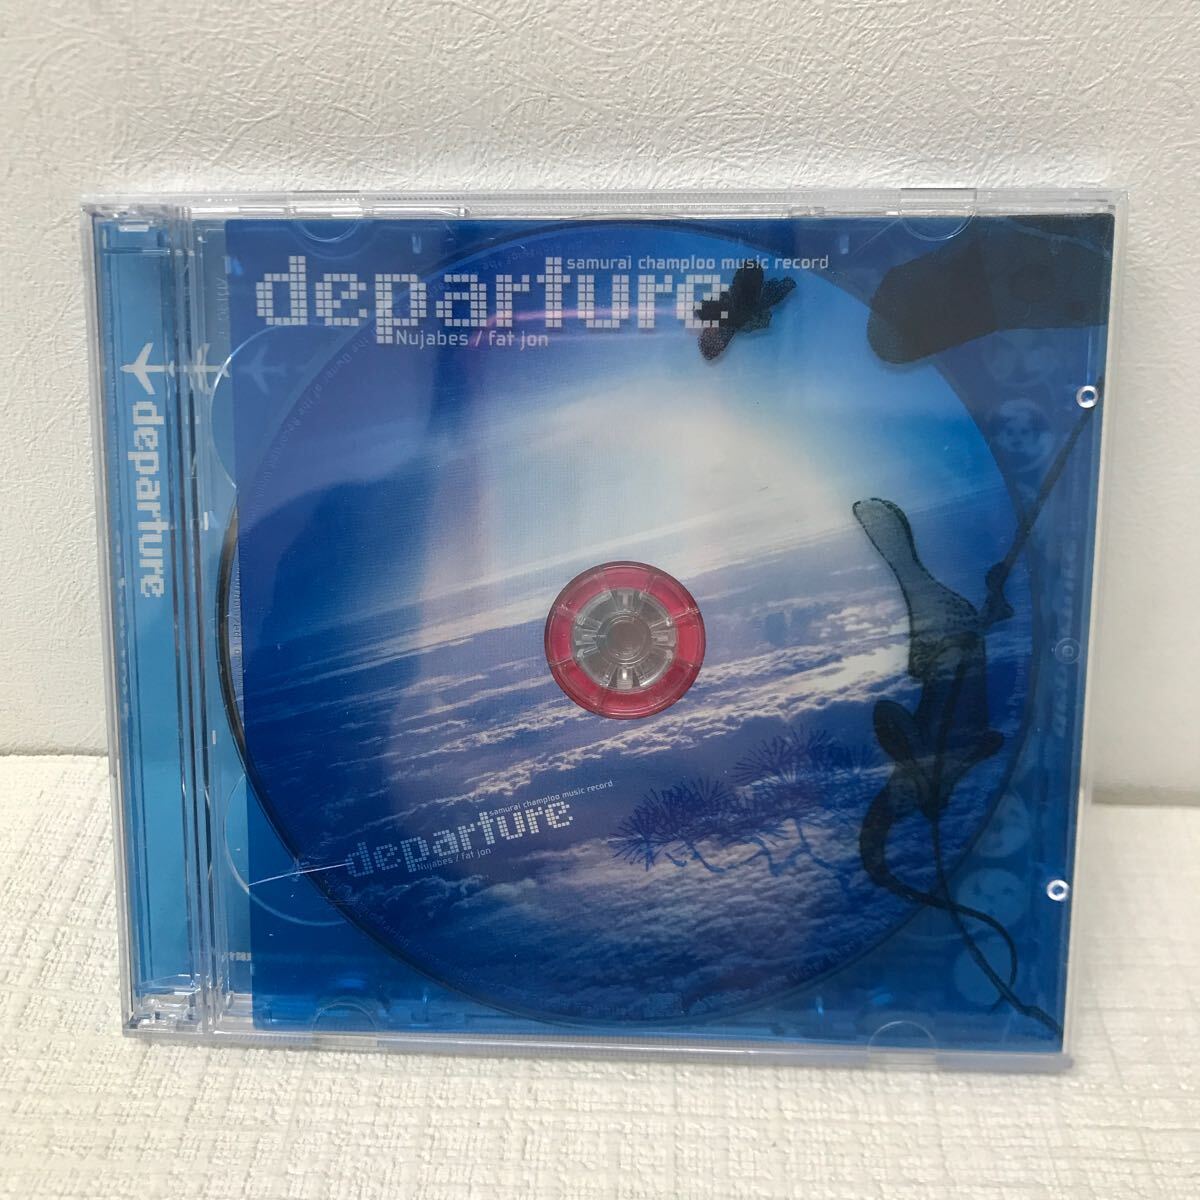 I0411A3 サムライチャンプルー samurai champloo music record departure Nujabes/fat jon ファット ジョン CD 音楽 アニメの画像1